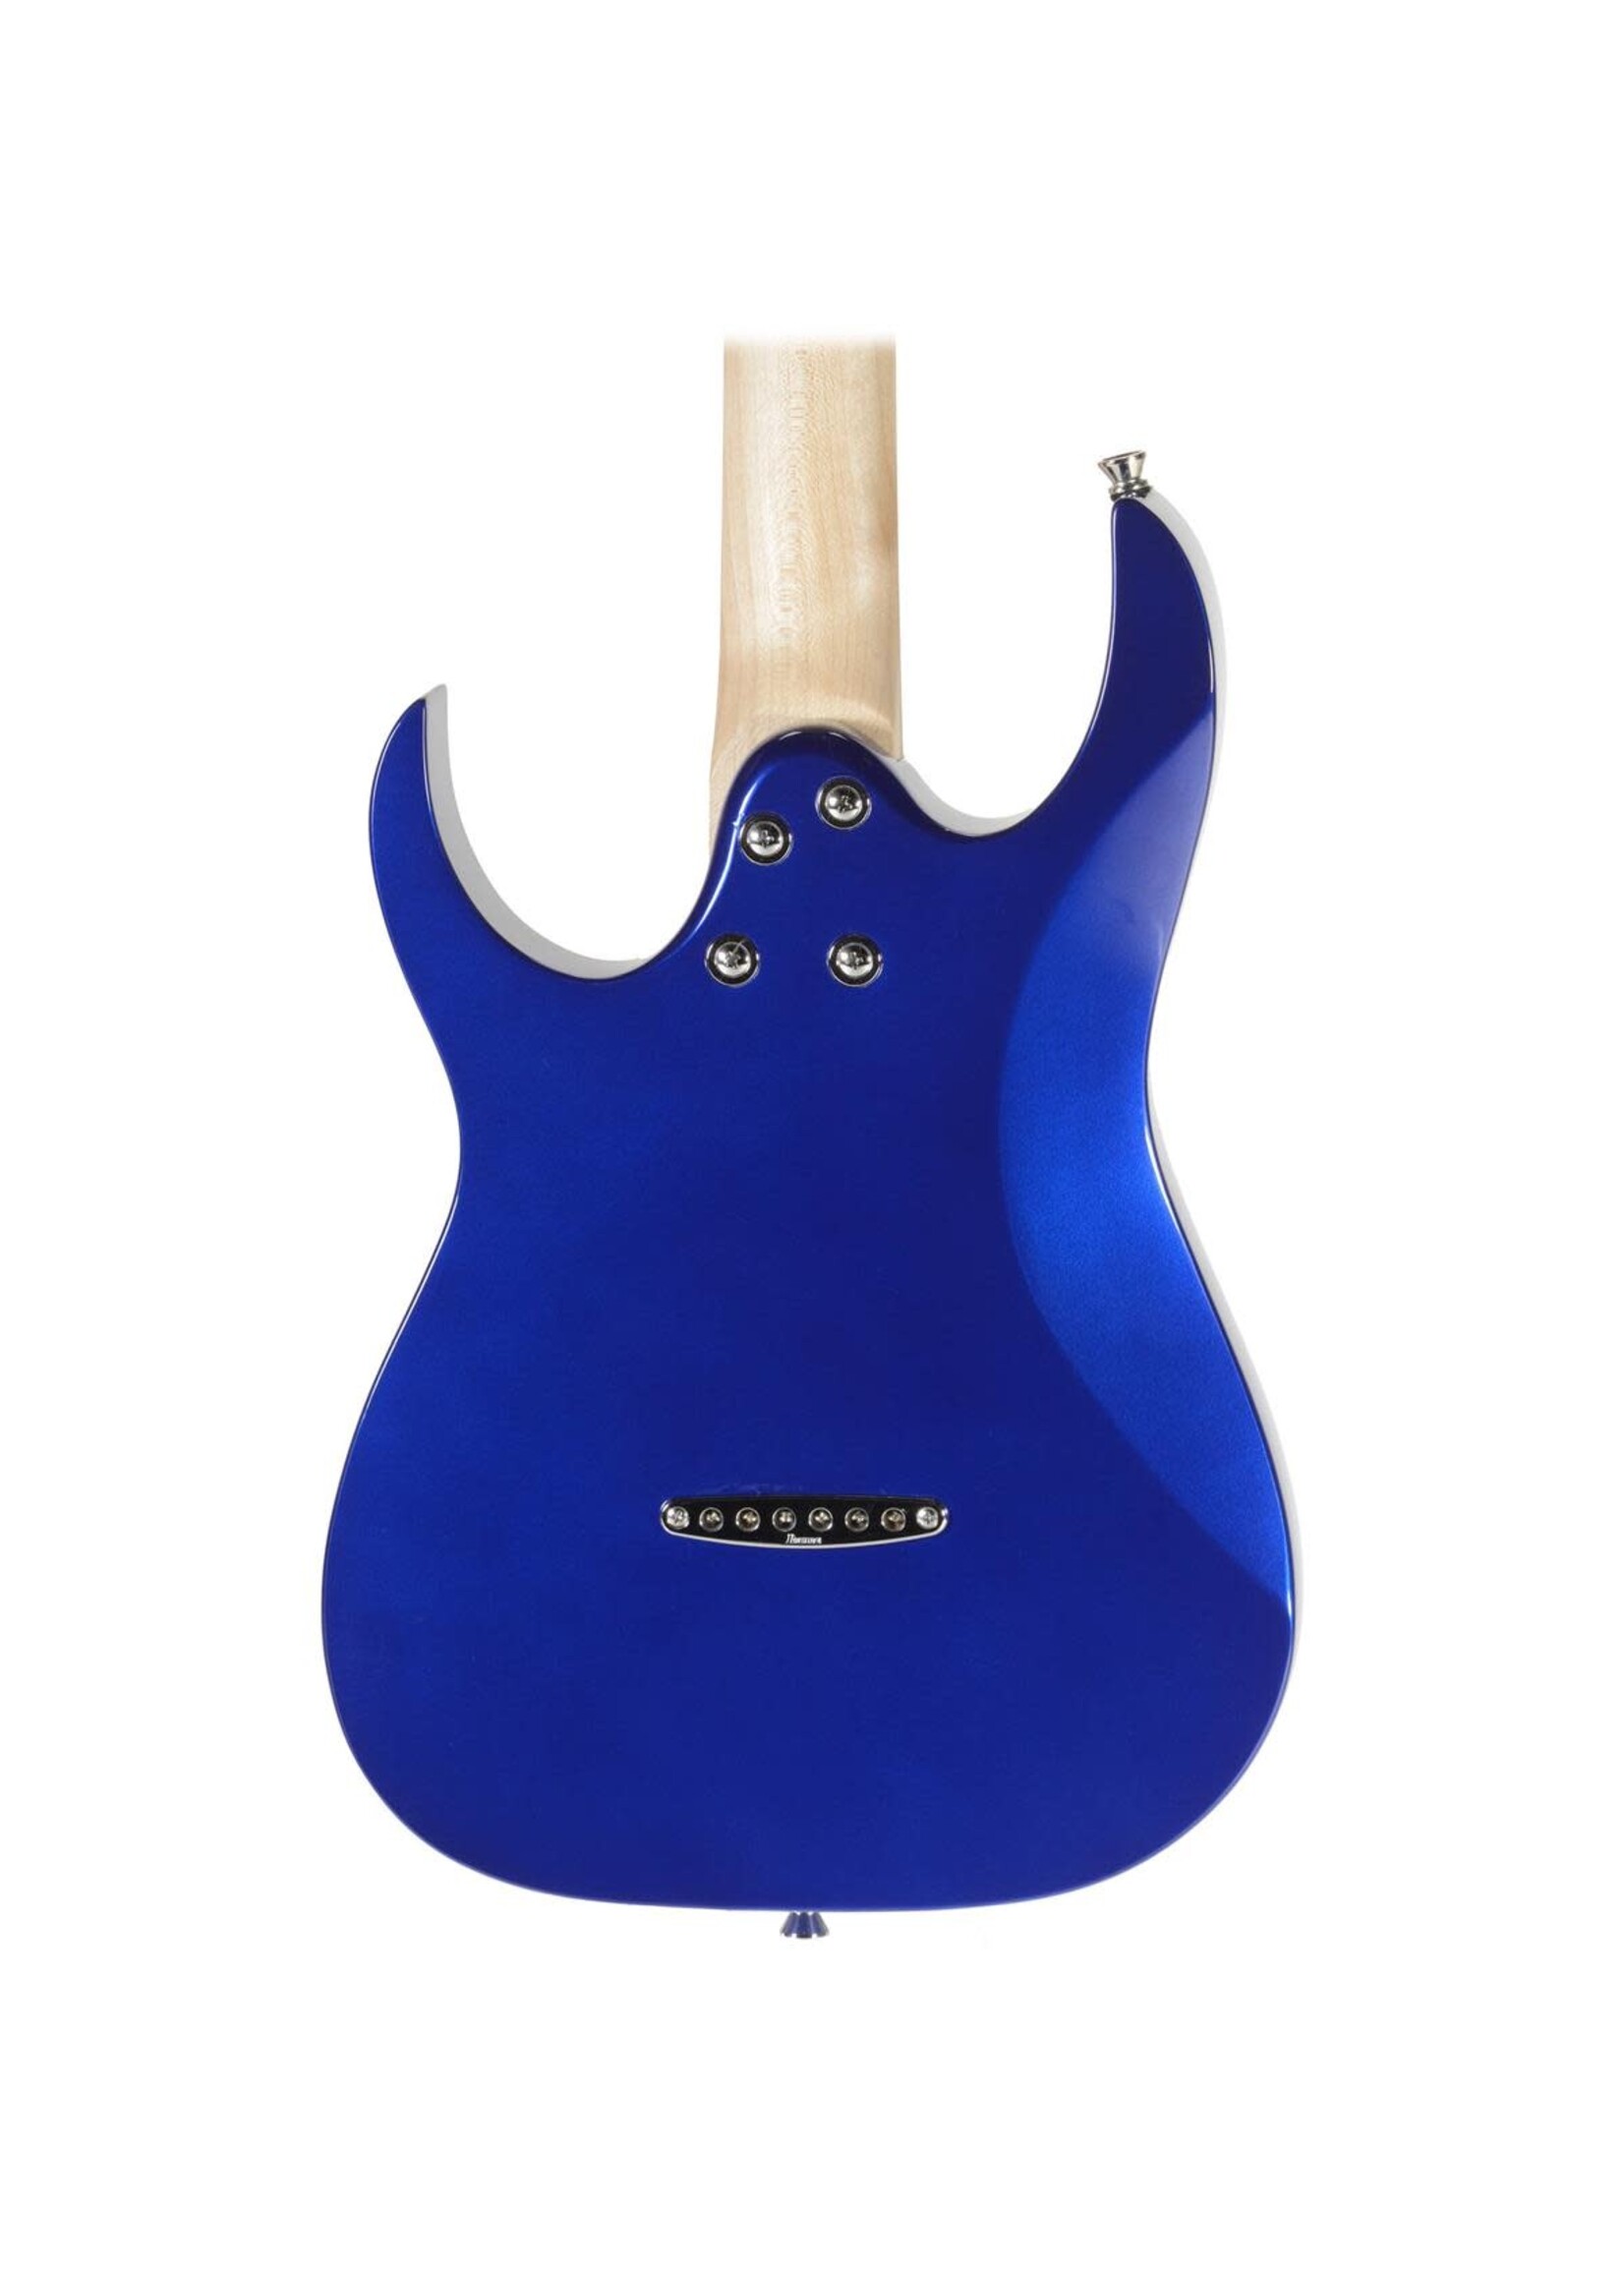 Ibanez Ibanez GRGM21MJB Mikro Electric Guitar Jewel Blue 3/4 Size